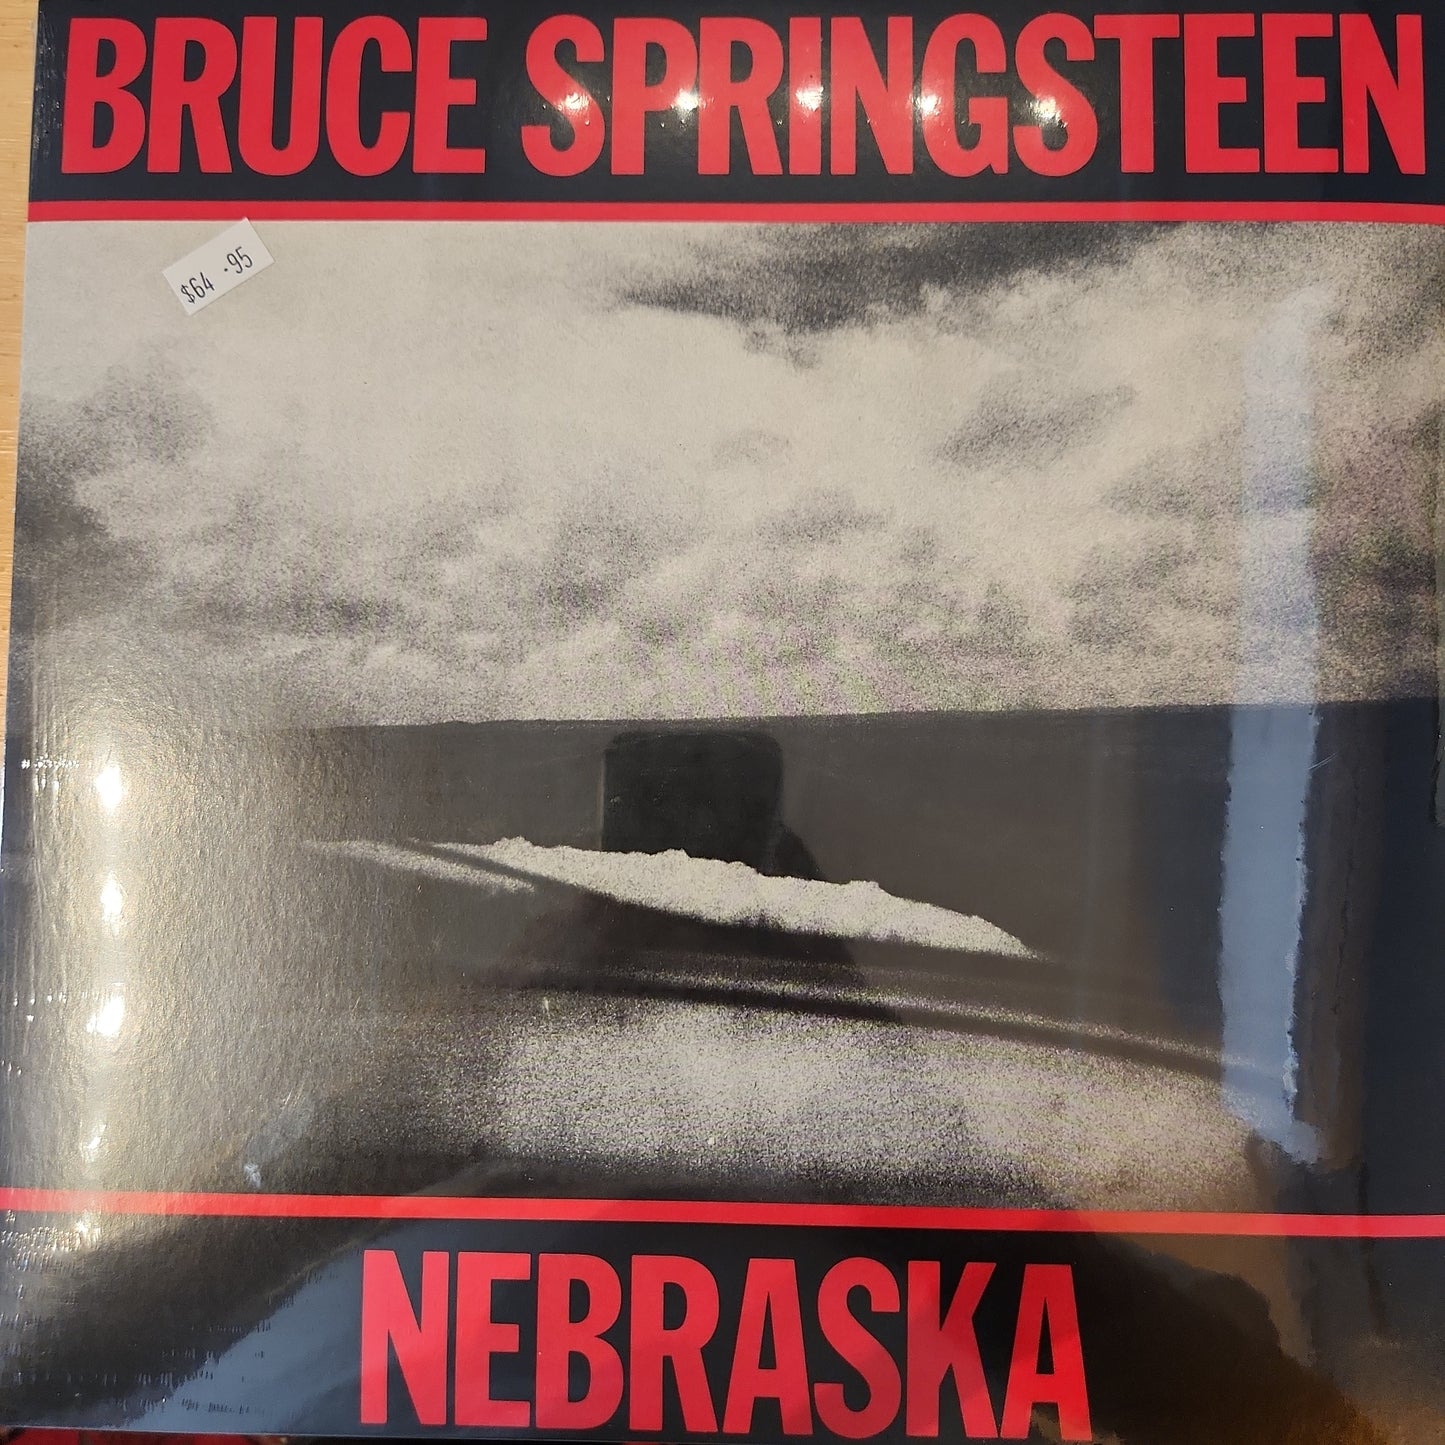 Bruce Springsteen - Nebraska - Vinyl LP